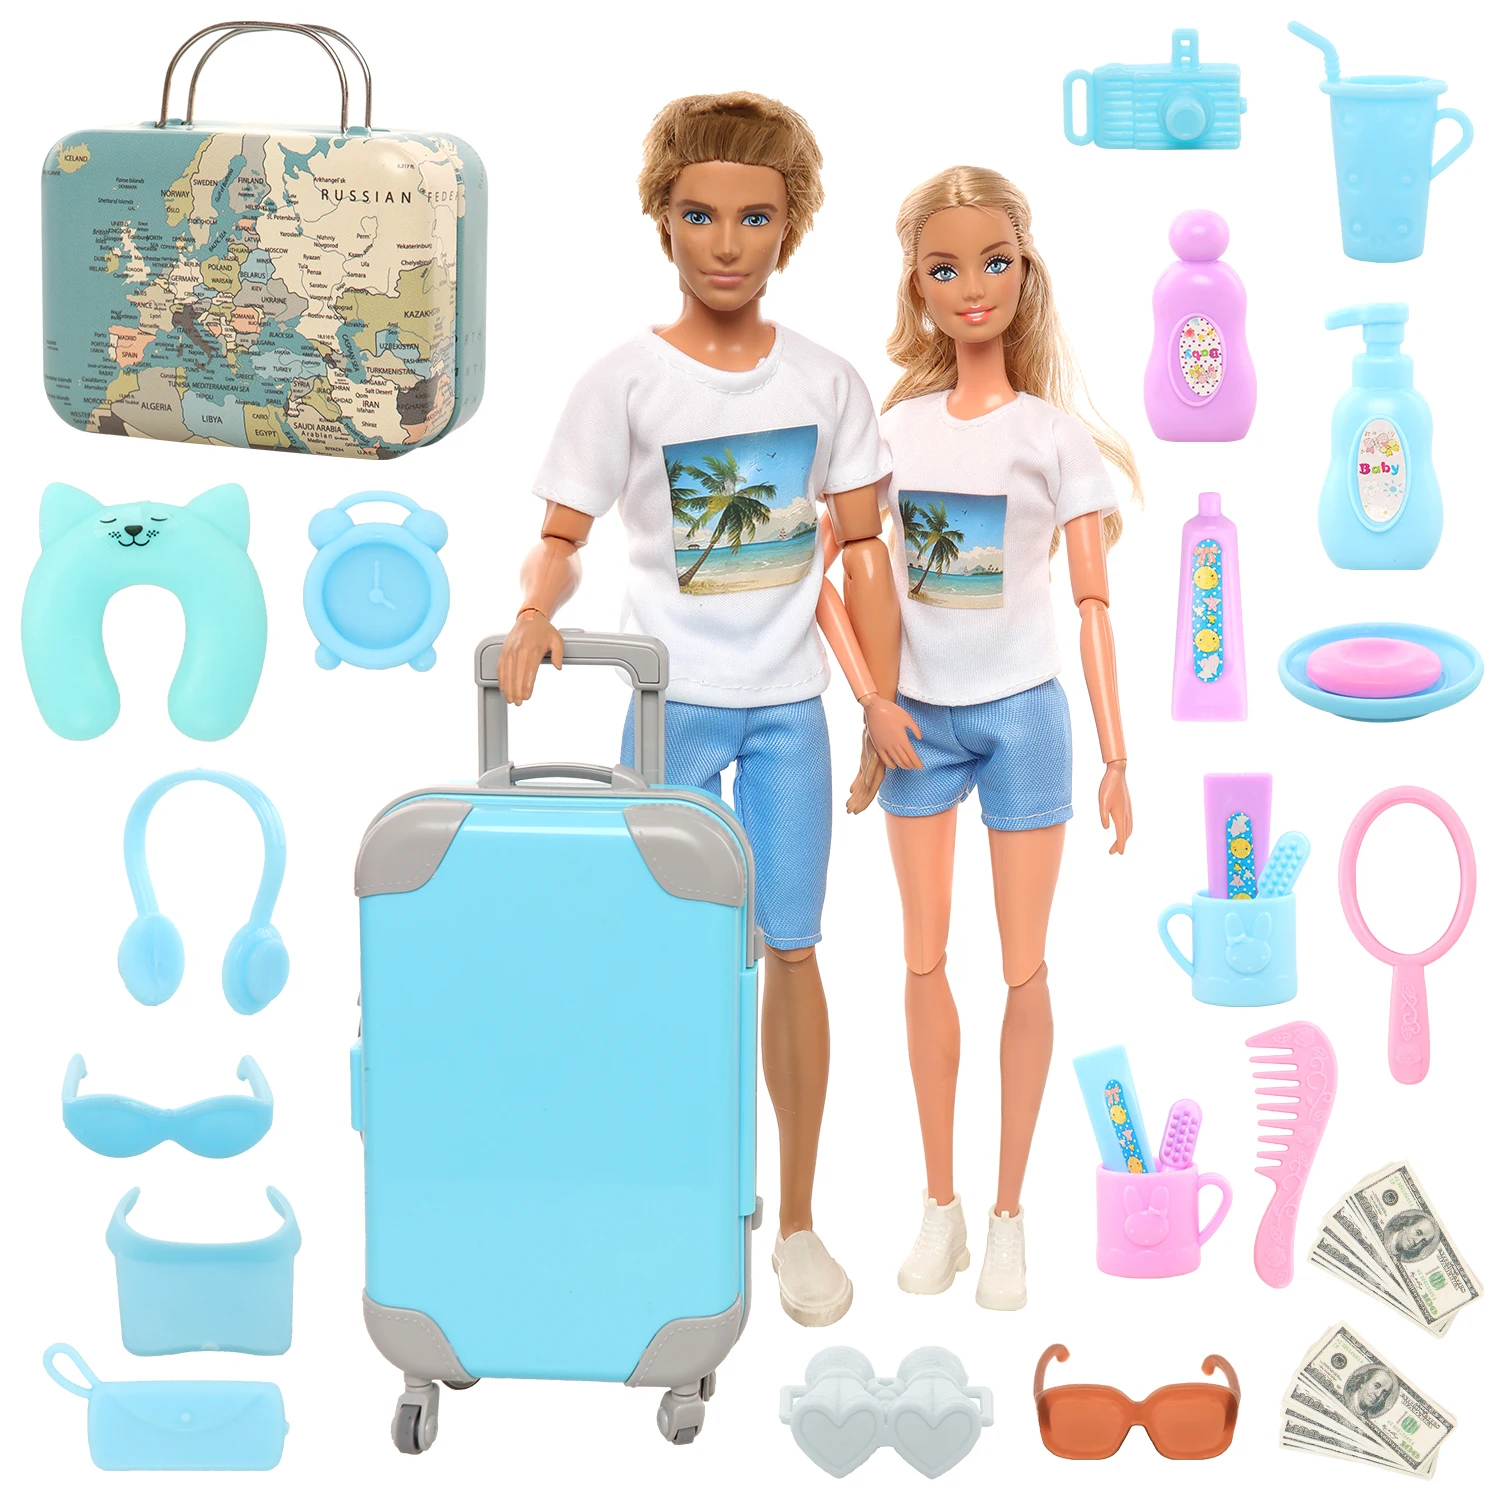 Аксессуары для кукол Барби, 33 шт., чемодан, телескоп, солнцезащитные очки, счеты, Детские аксессуары для Барби, детские игрушки в подарок